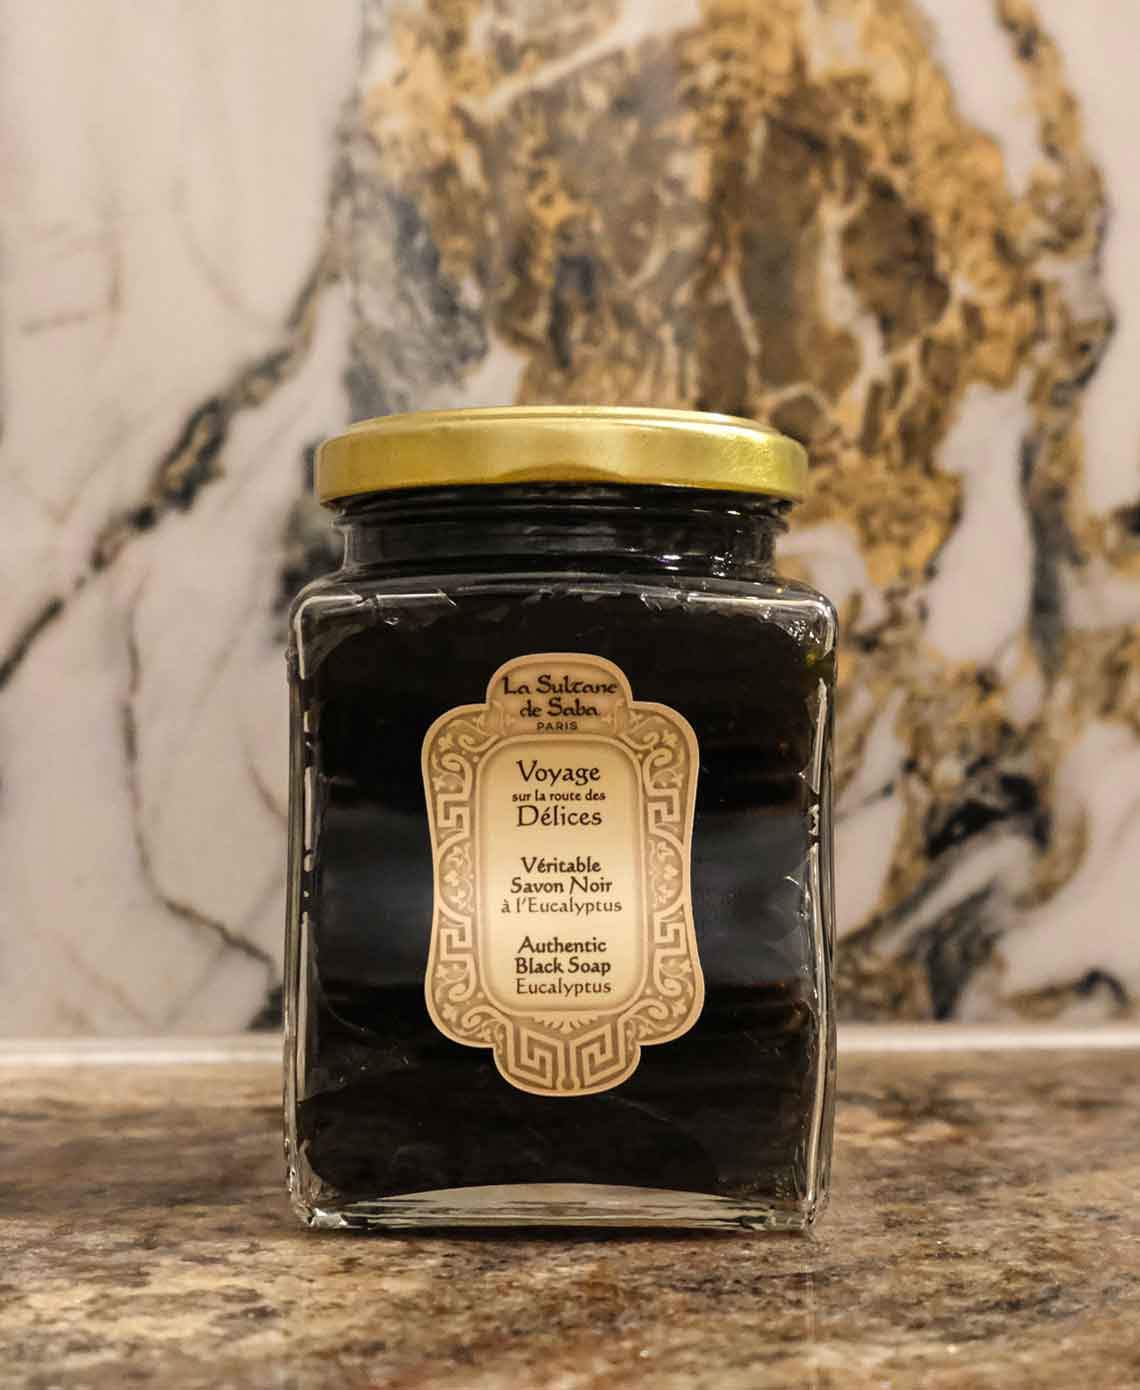 La Sultanе De Saba Authentic Black Soap Eucalyptus